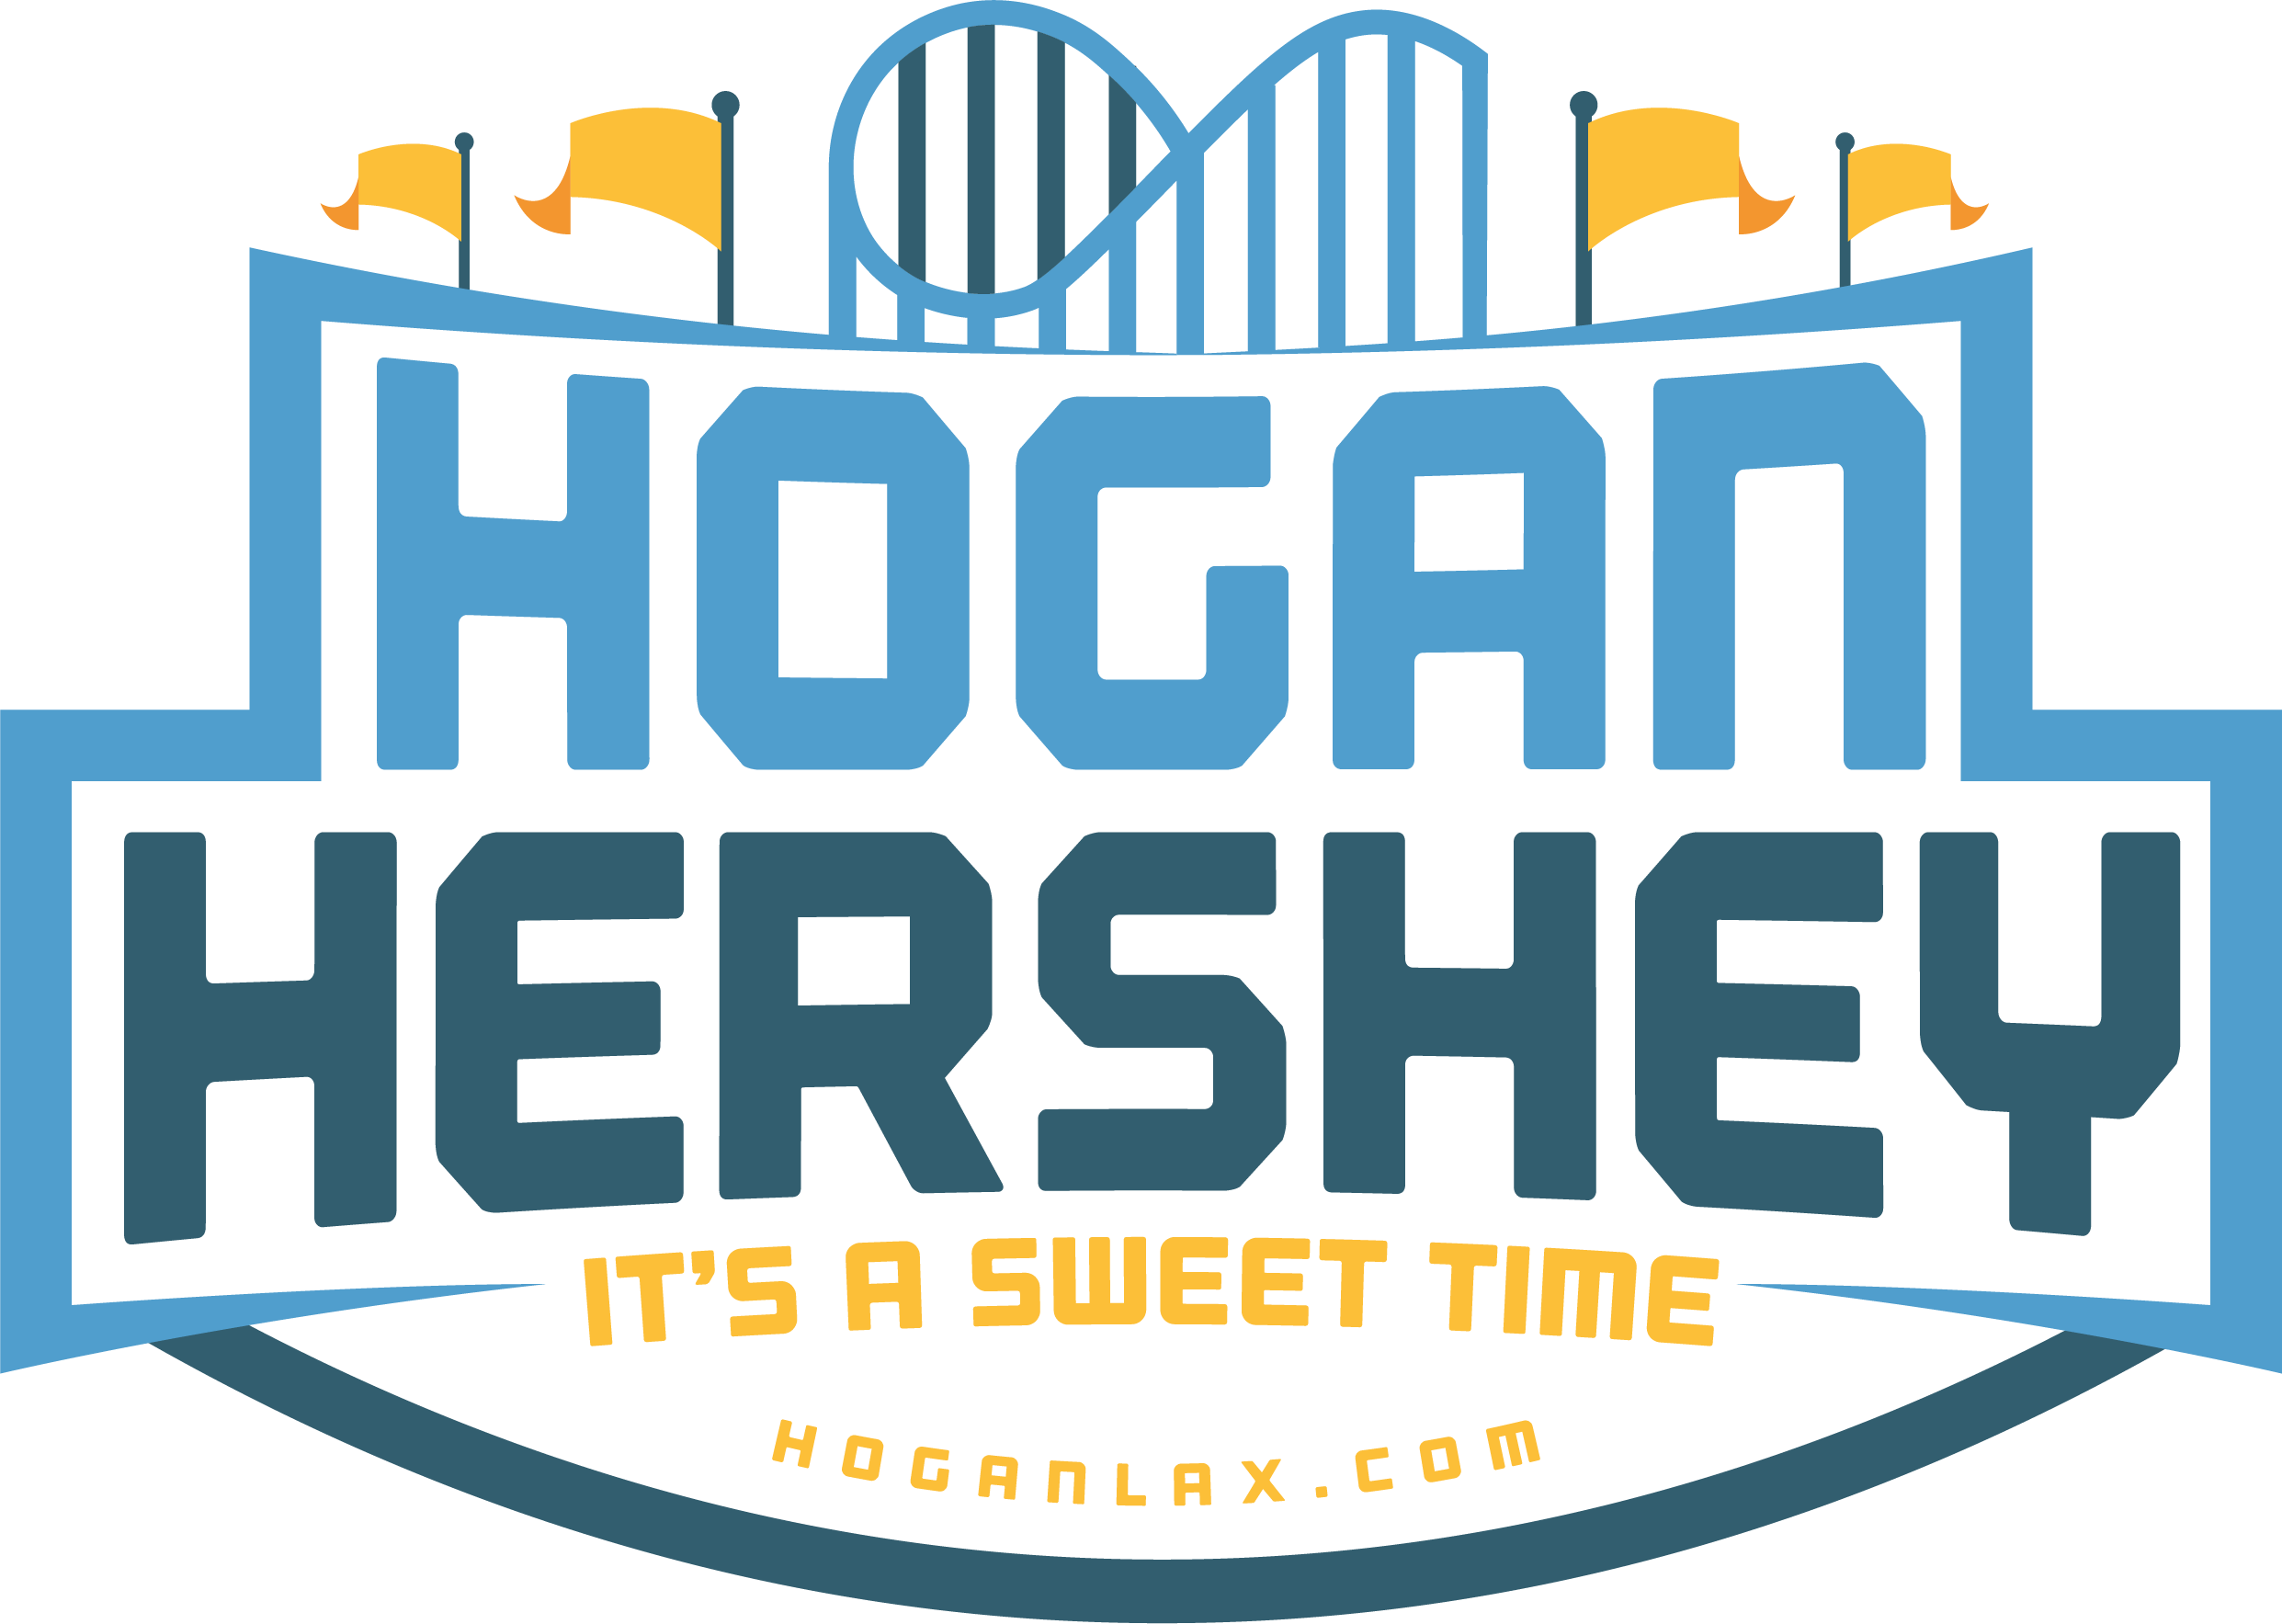 Hogan Hershey